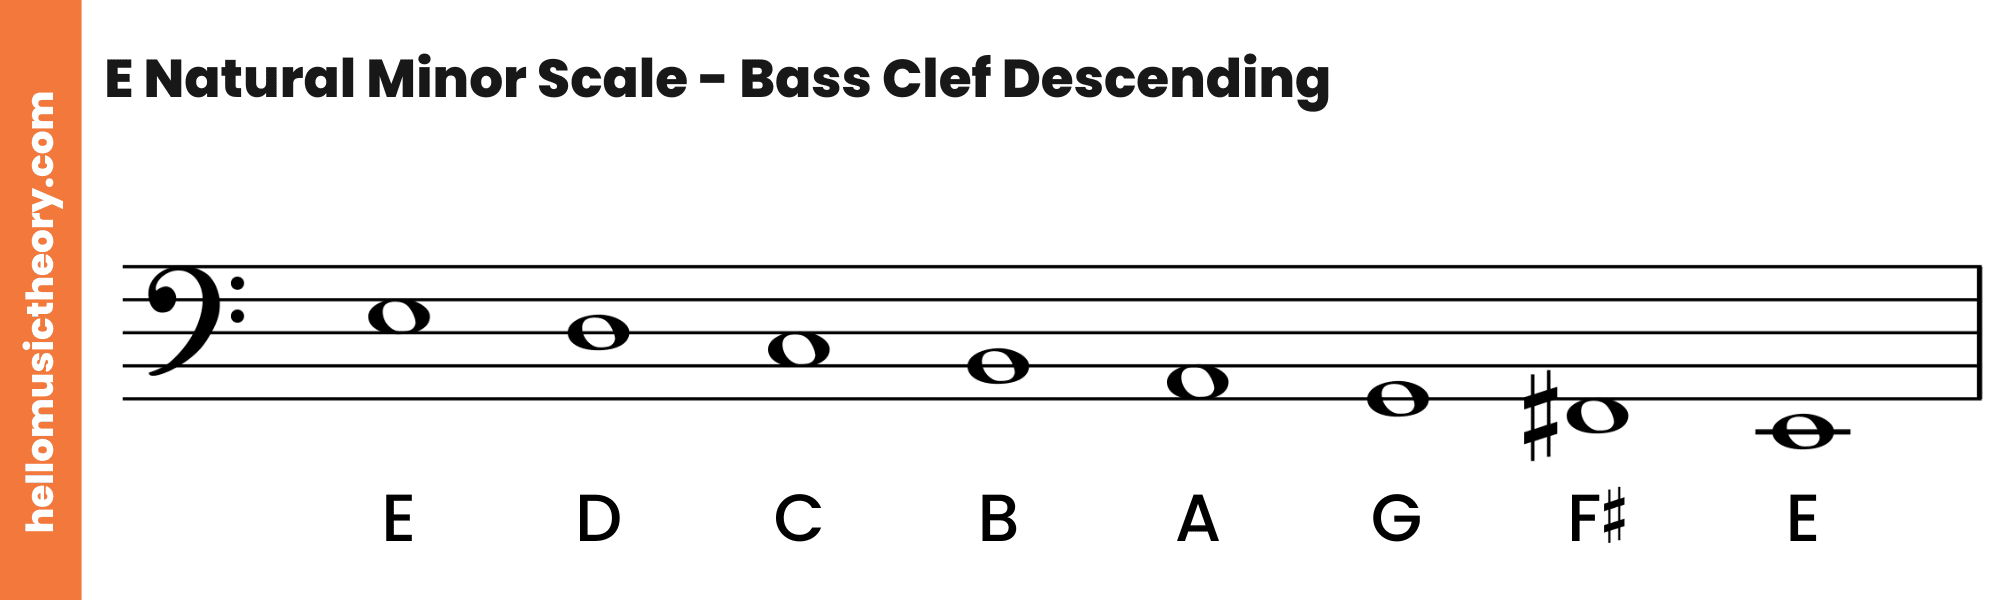 E Natural Minor Scale Bass Clef Descending